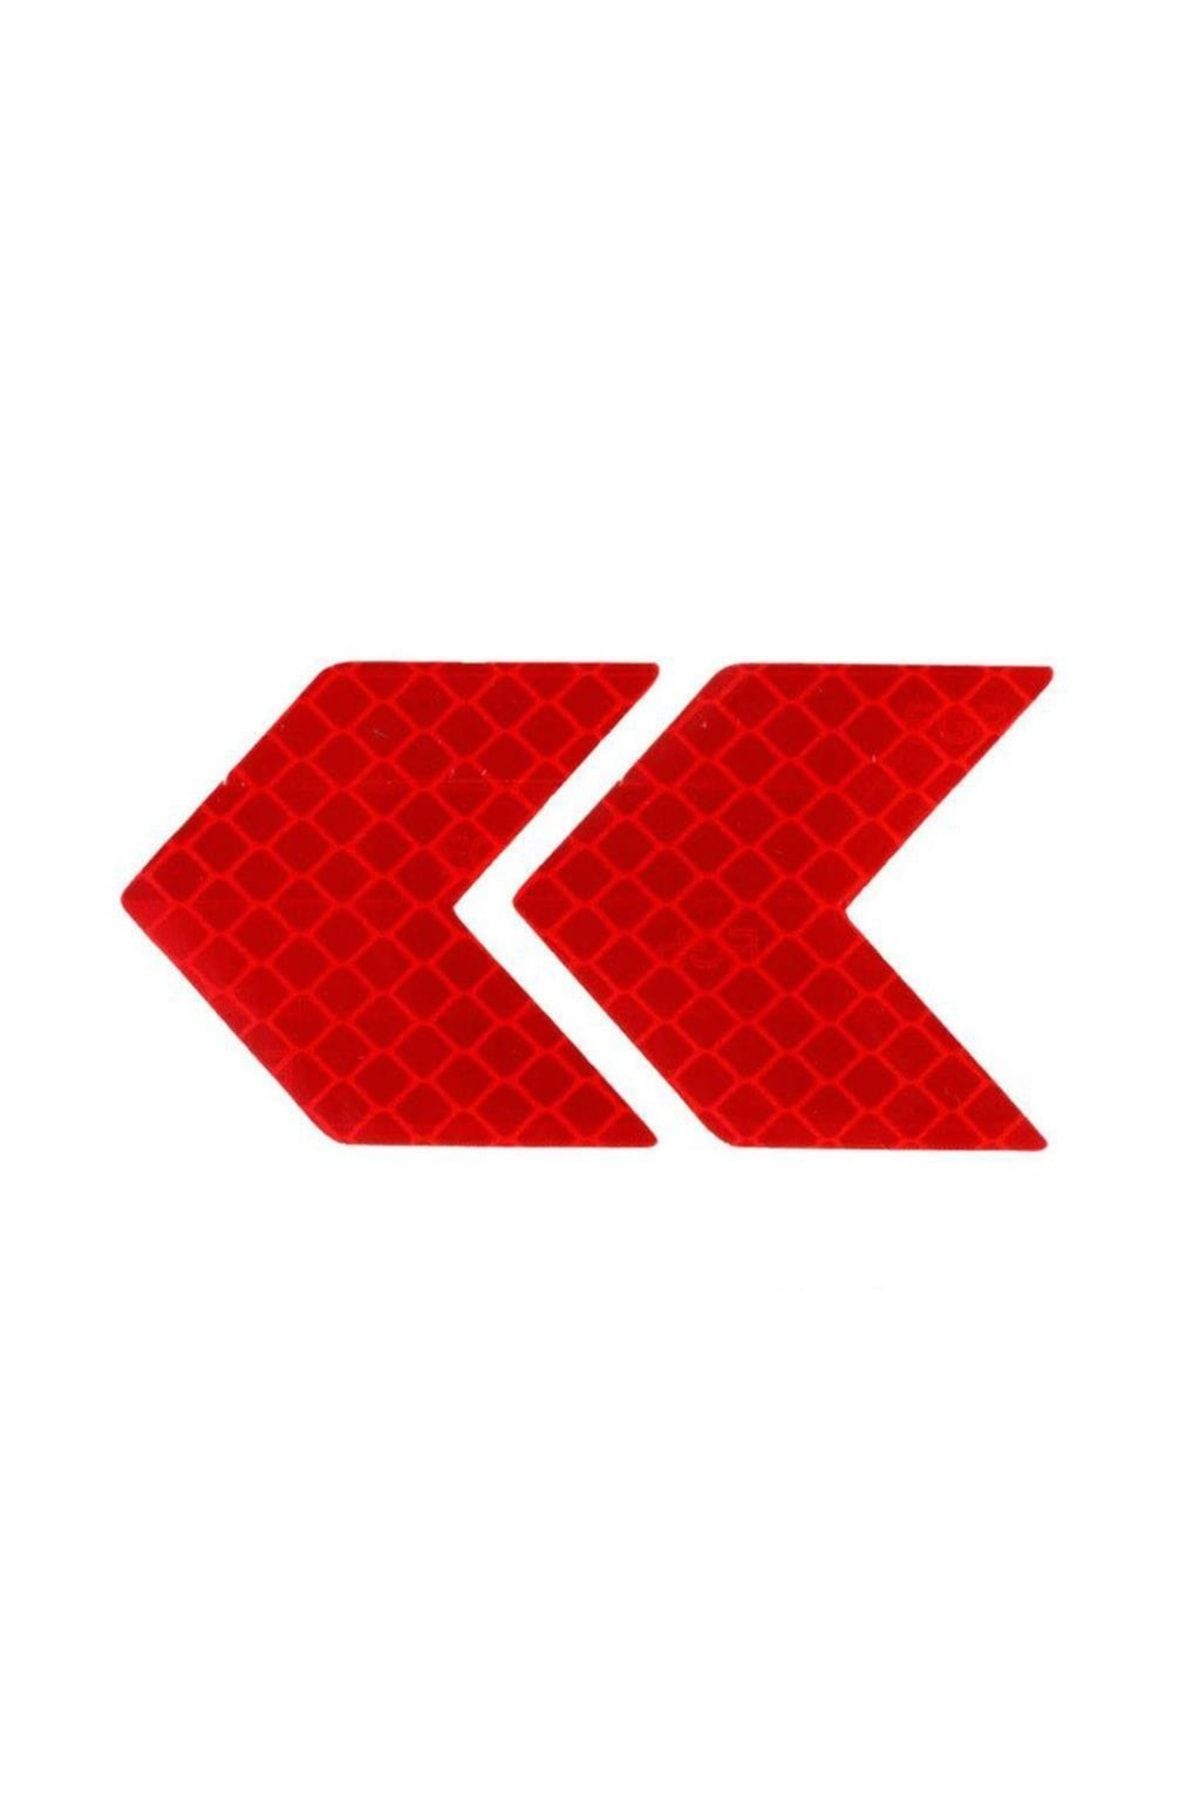 Knmaster Ok Şerit Reflektörlü Yansıtıcı Sticker Etiket Kırmızı